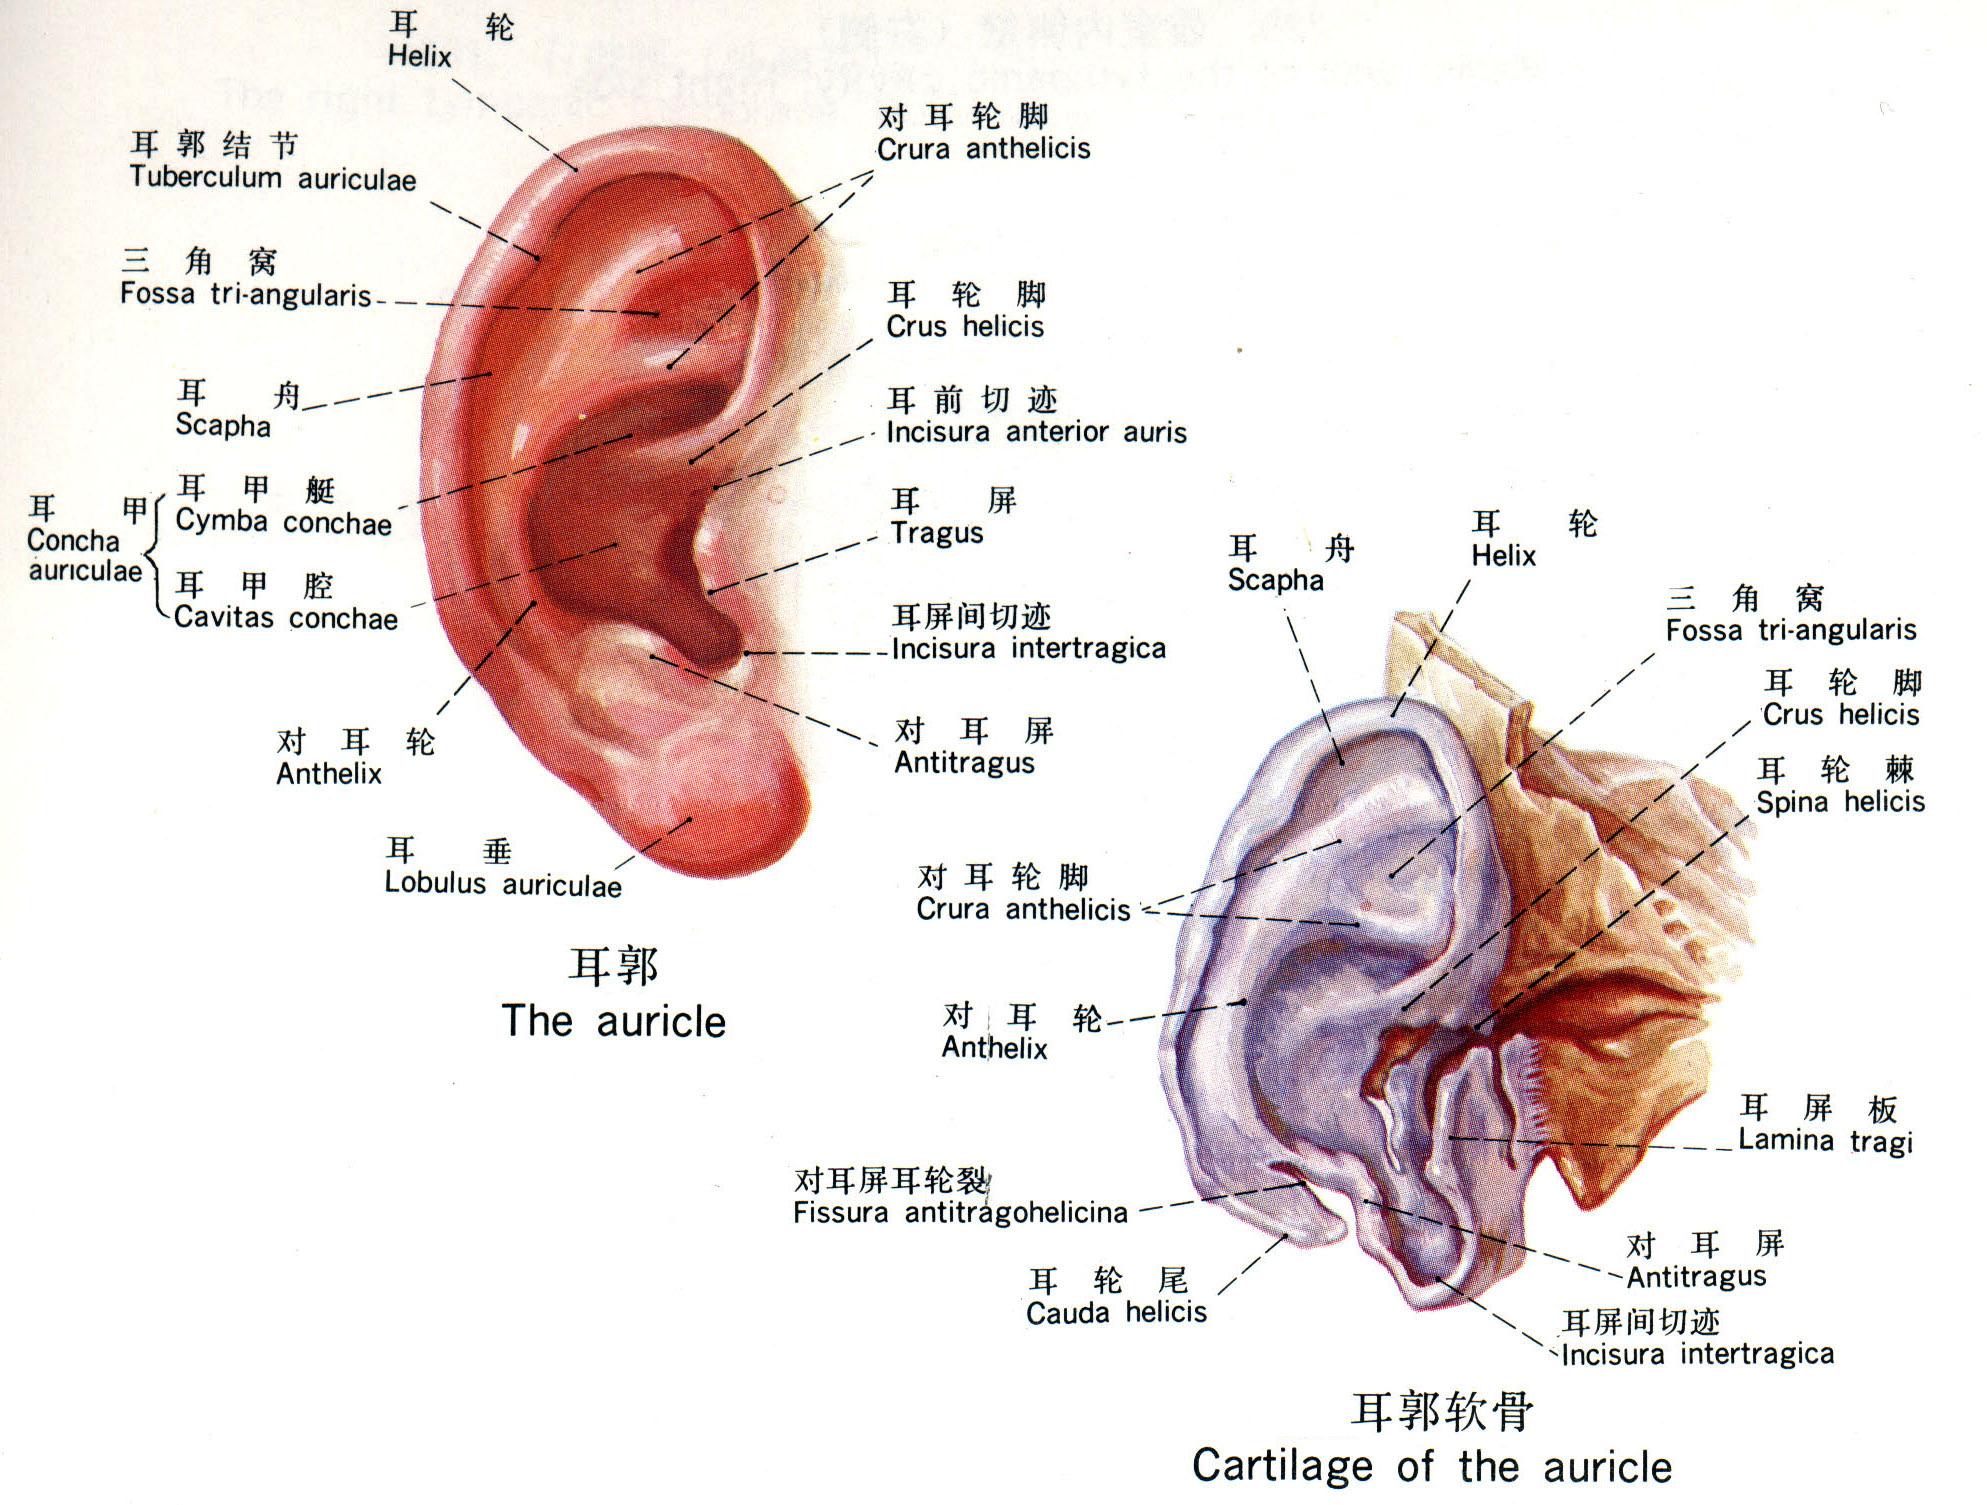 耳部脑的准确位置图图片